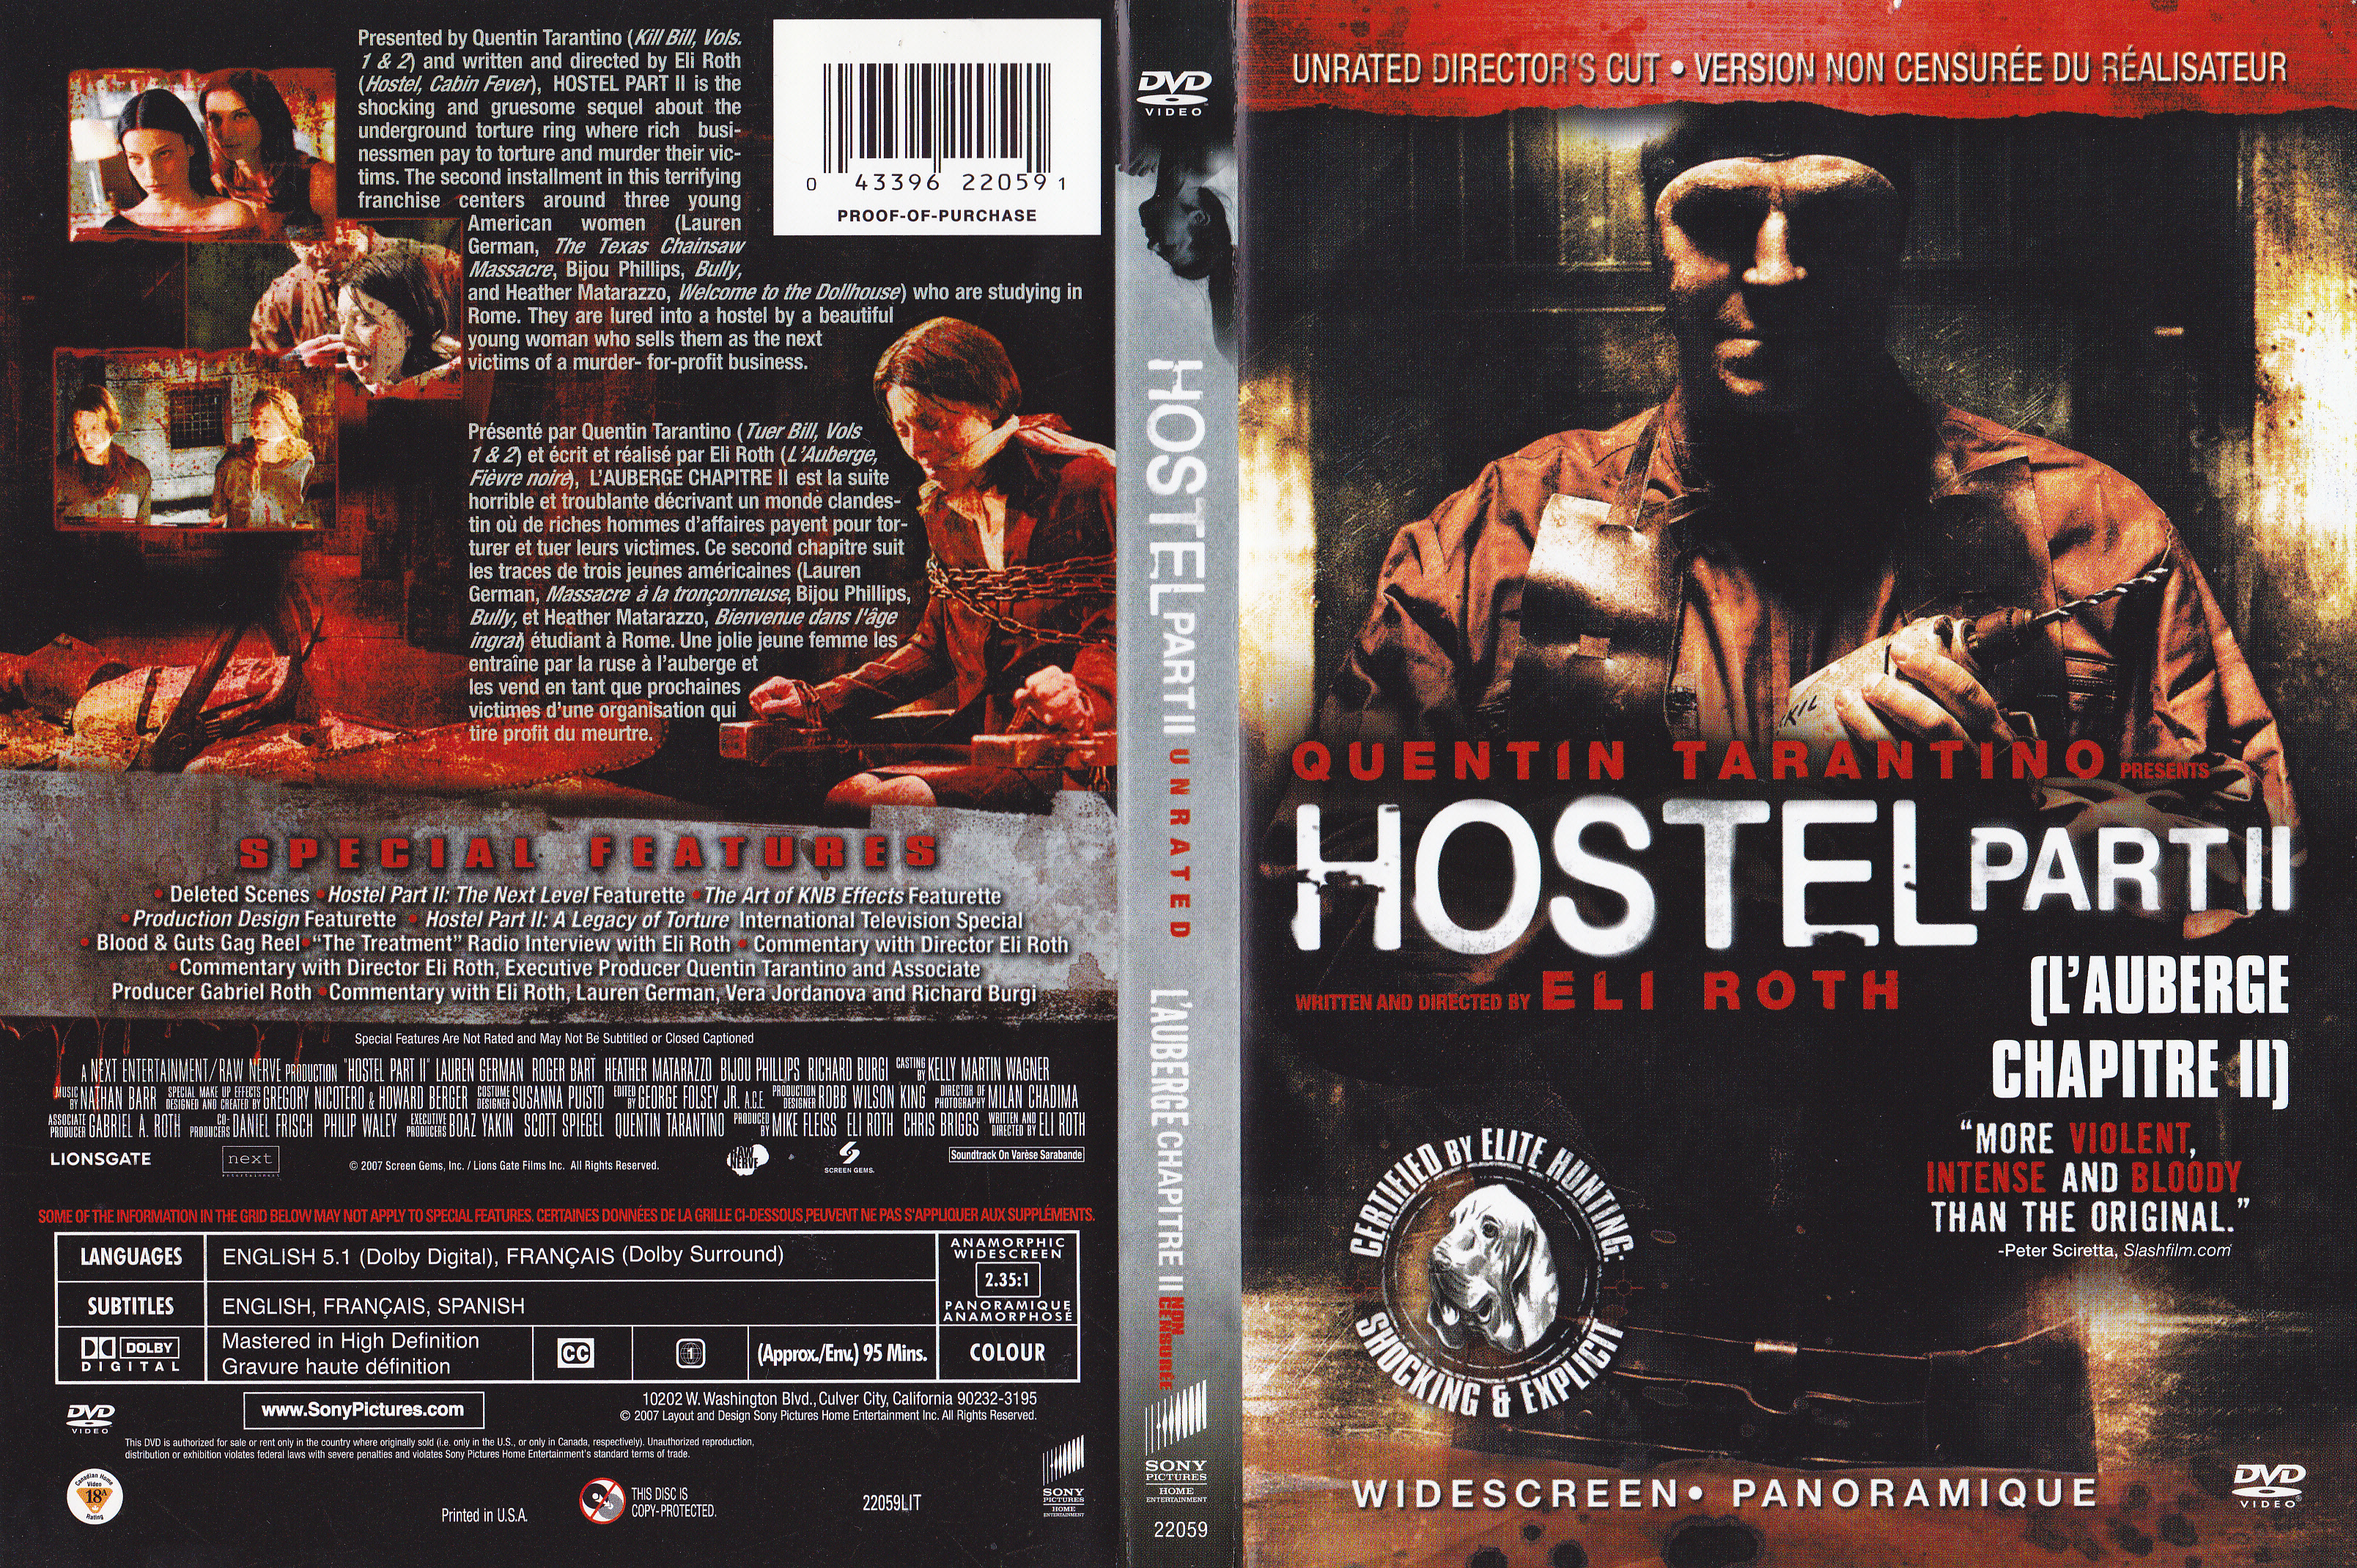 Jaquette DVD Hostel 2 - L